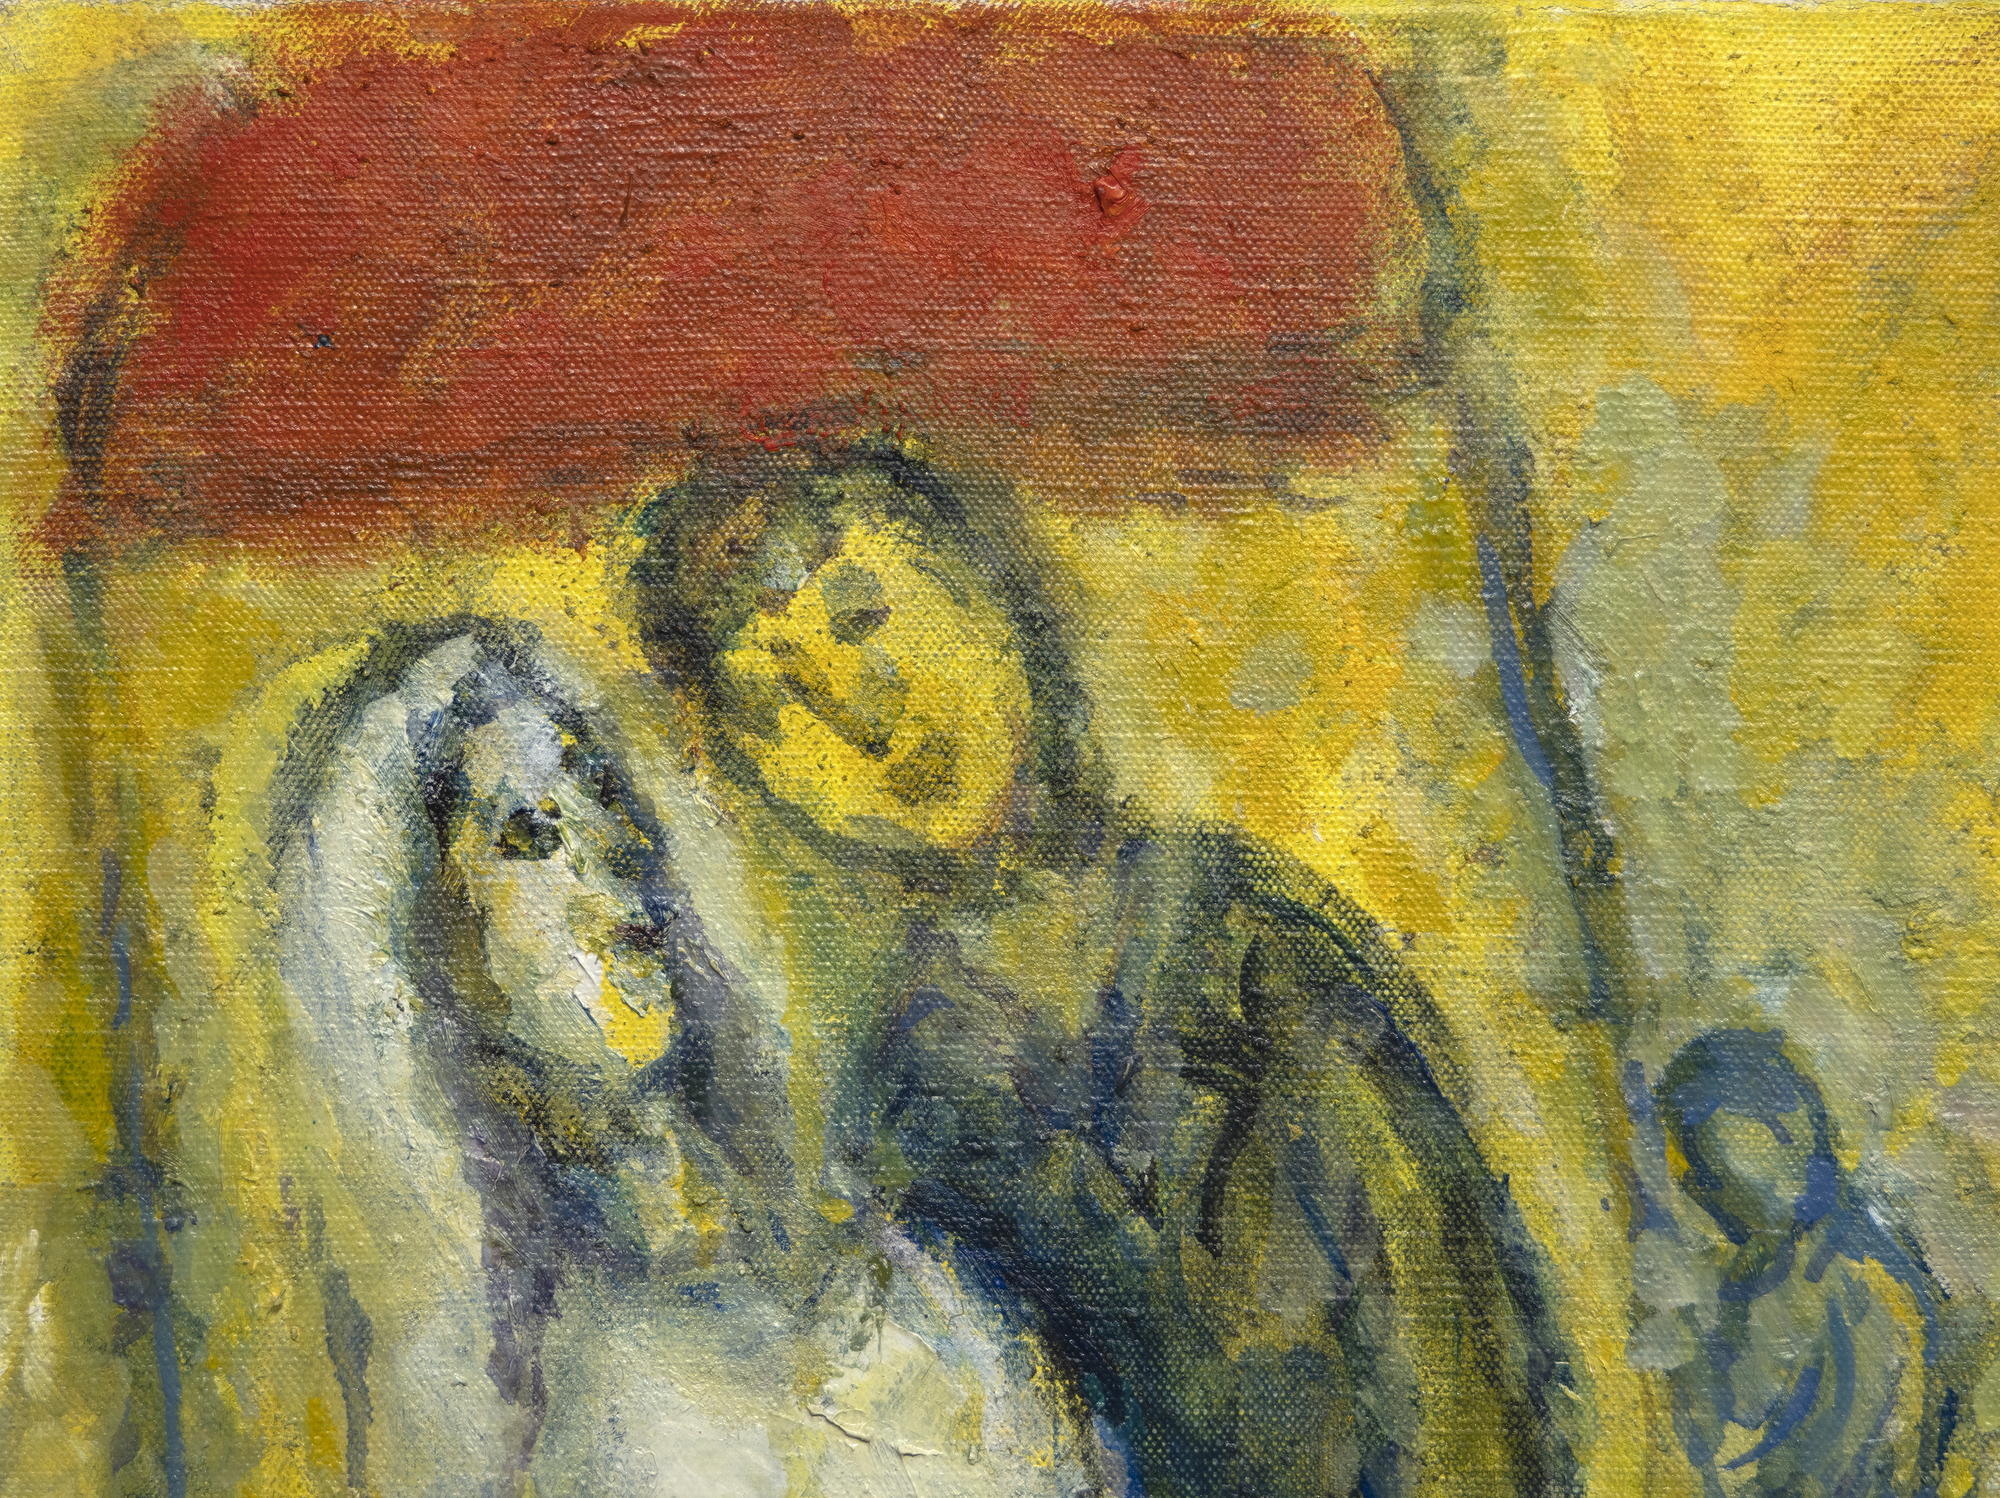 El mundo de Marc Chagall no puede ser contenido ni limitado por las etiquetas que le ponemos. Es un mundo de imágenes y significados que forman su propio discurso espléndidamente místico. Les Mariés sous le baldaquin (Los novios bajo el baldaquín) fue iniciado cuando el artista entraba en su nonagésimo año, un hombre que había conocido la tragedia y la lucha, pero que nunca olvidó los momentos de placer arrebatador de la vida. Aquí, las delicias de ensueño de una boda en un pueblo ruso, con sus arreglos de asistentes bien vestidos, se nos presentan con un ingenio tan feliz y una inocencia tan alegre que no hay quien se resista a su encanto. Utilizando una emulsión de tonos dorados que combina óleo y aguada opaca al agua, la calidez, la alegría y el optimismo del positivismo habitual de Chagall se envuelven en un resplandor luminoso que sugiere la influencia de los iconos religiosos dorados o de la pintura del Renacimiento temprano que pretendía transmitir la impresión de luz divina o iluminación espiritual. Utilizar una combinación de óleo y gouache puede ser todo un reto. Pero aquí, en Les Mariés sous le baldaquin, Chagall lo emplea para dar a la escena una calidad de otro mundo, casi como si acabara de materializarse a partir del ojo de su mente. La delicadeza de su textura crea la impresión de que la luz emana de la propia obra y confiere un carácter espectral a las figuras que flotan en el cielo.